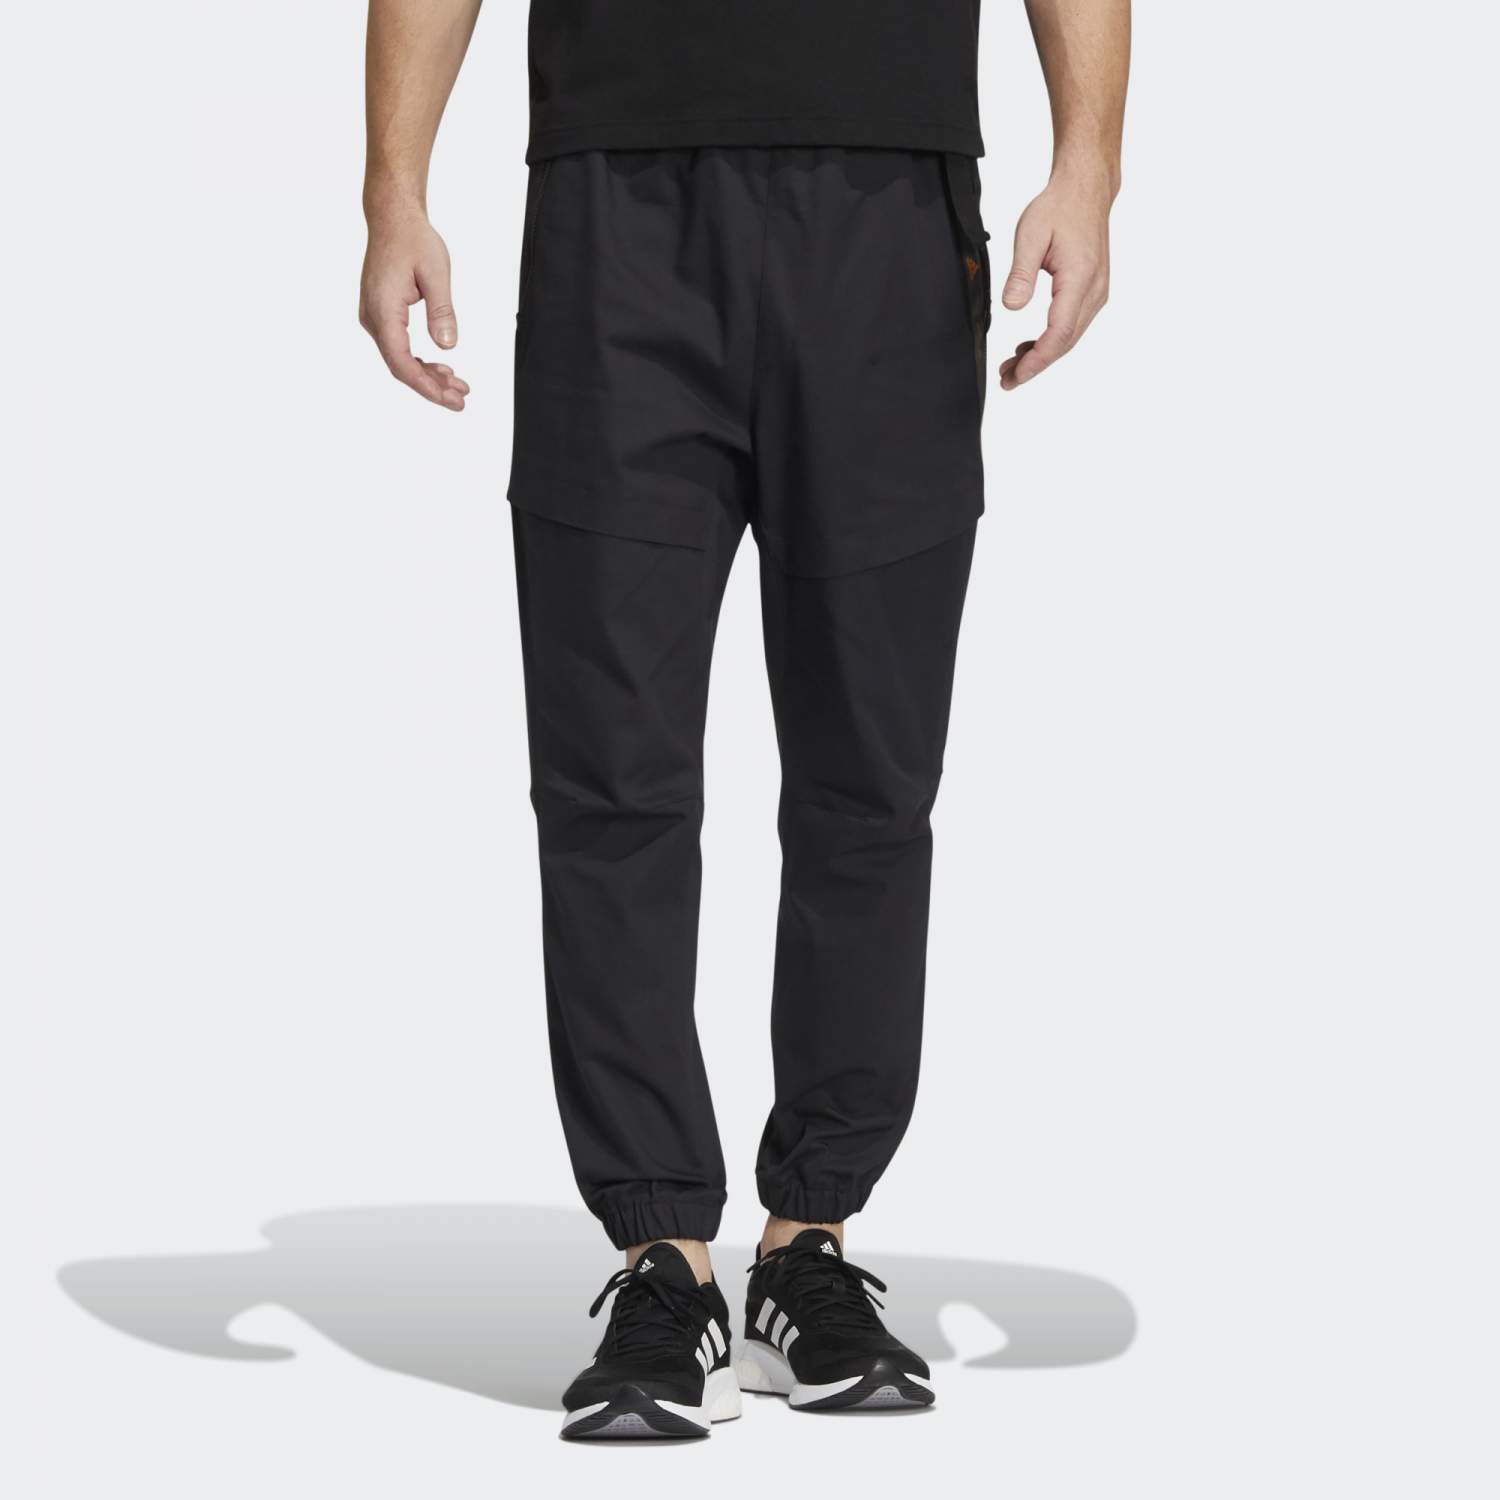 Спортивные брюки мужские Adidas HE9895 черные 2XL - купить в Москве, ценына Мегамаркет